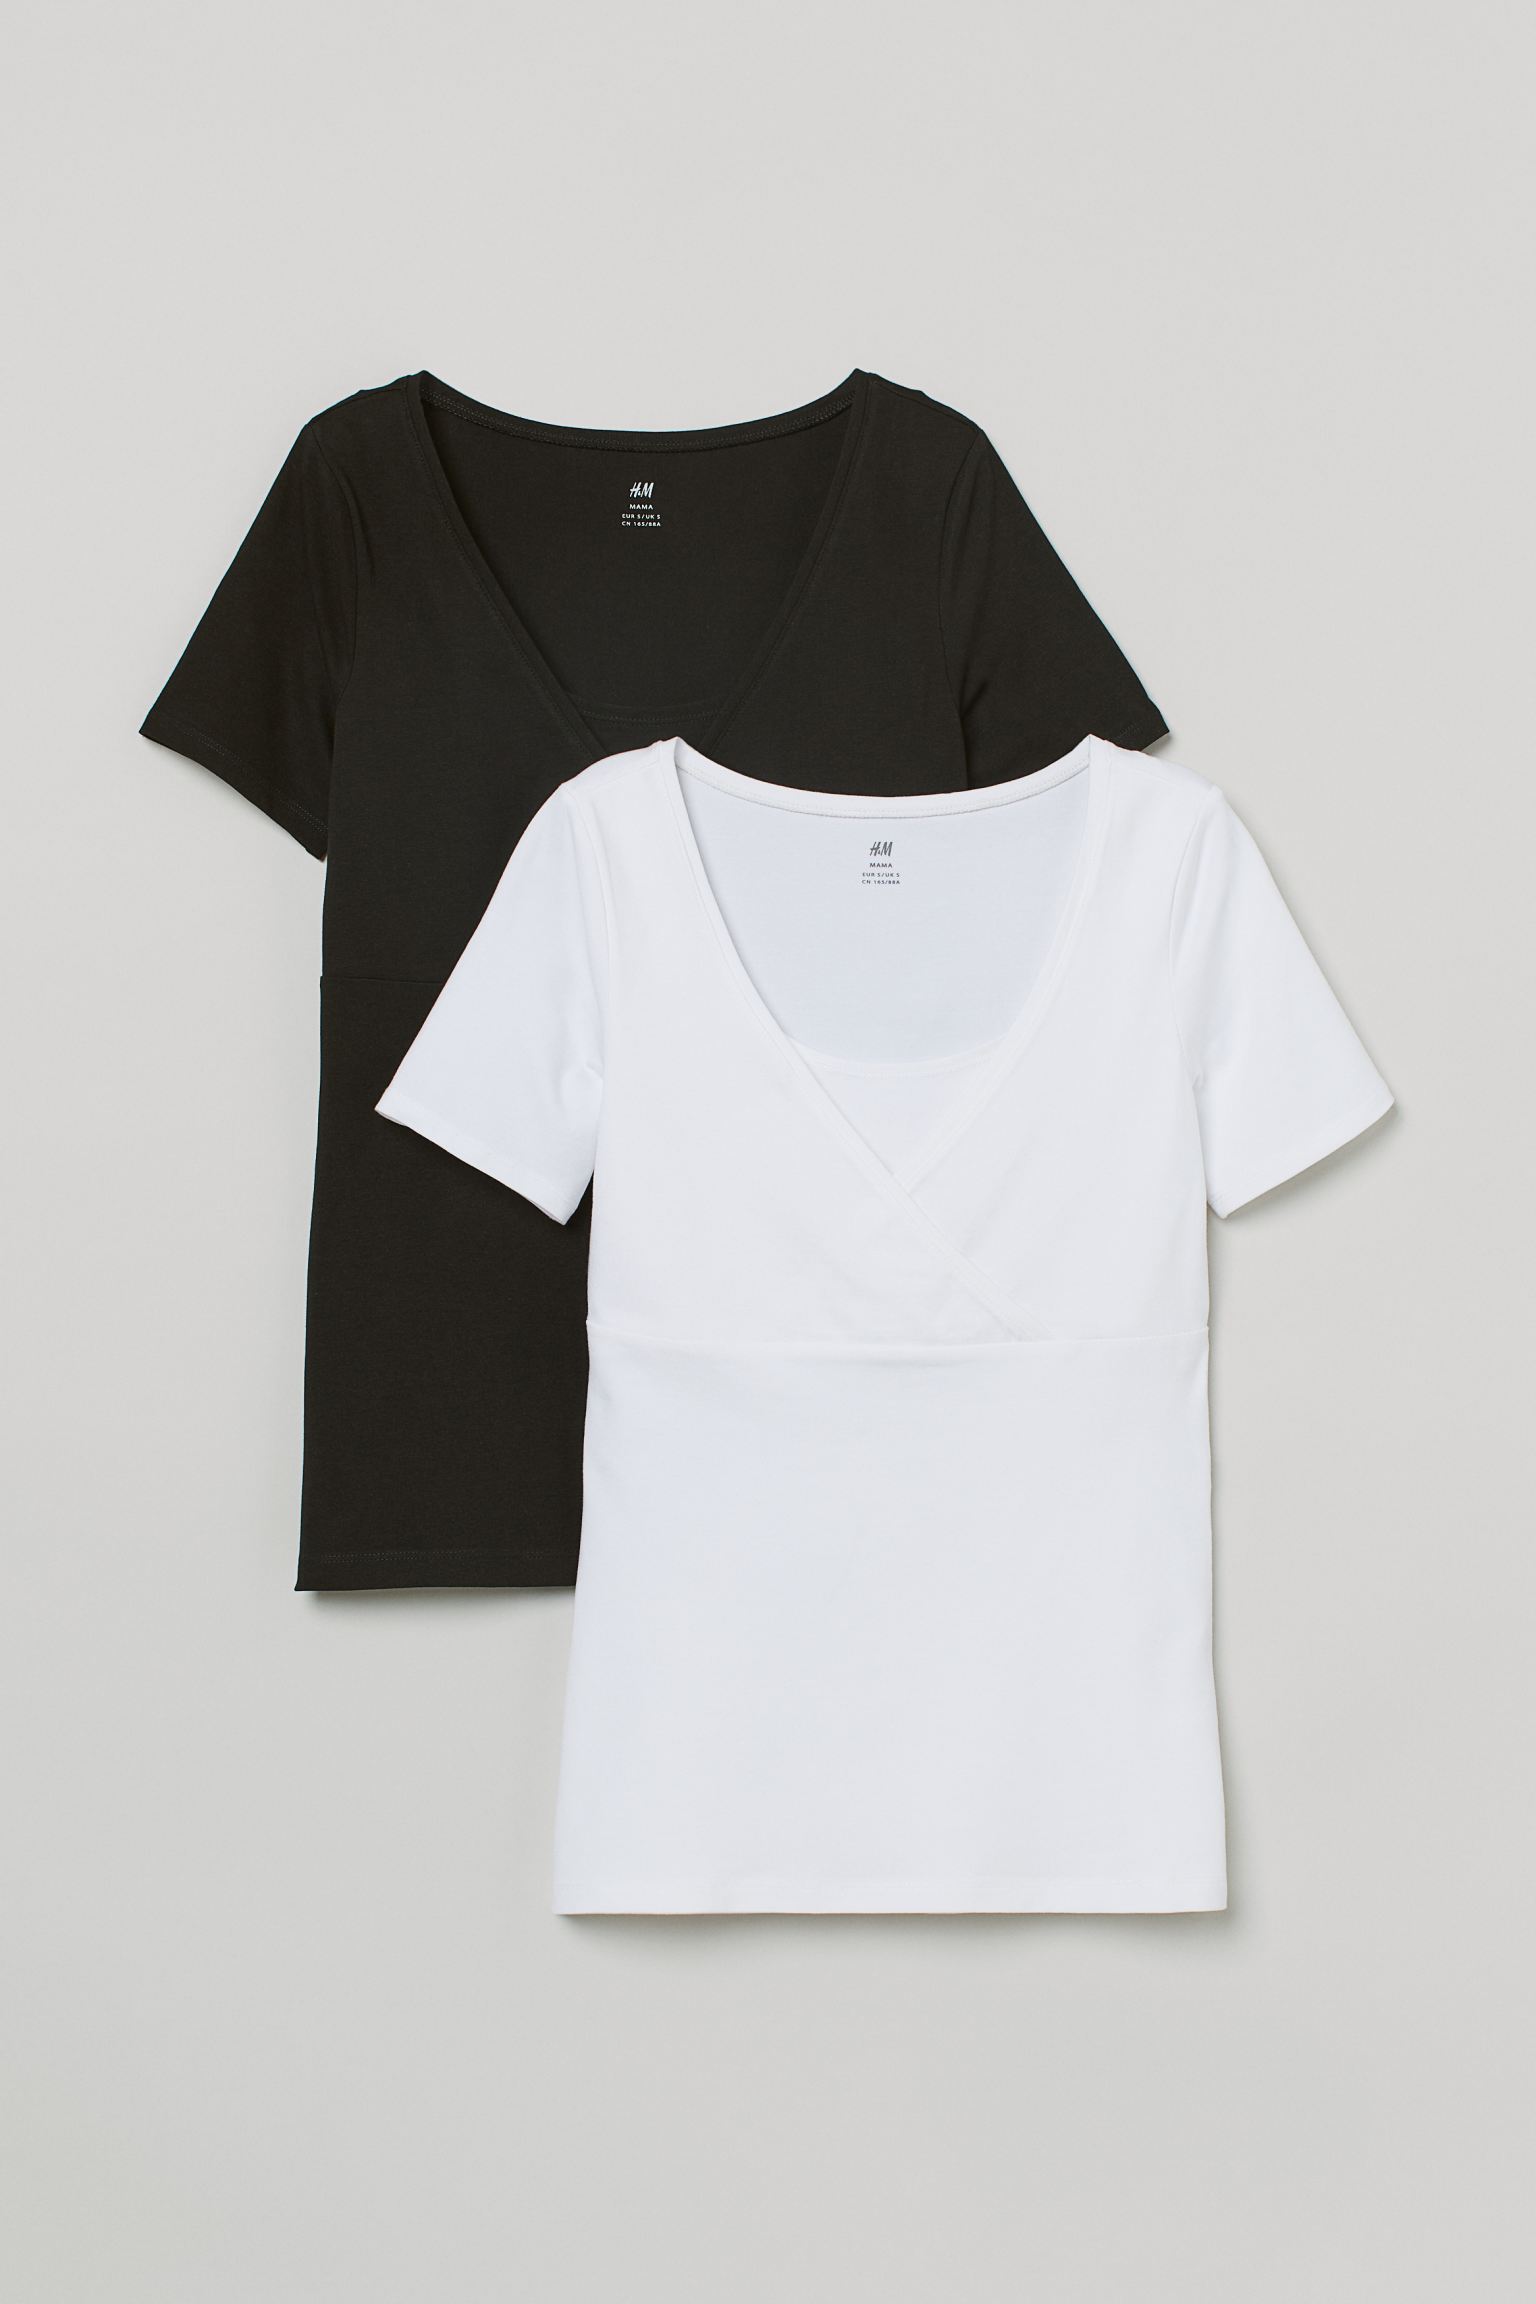 Комплект футболок женских H&M 433414038 черных L (доставка из-за рубежа)